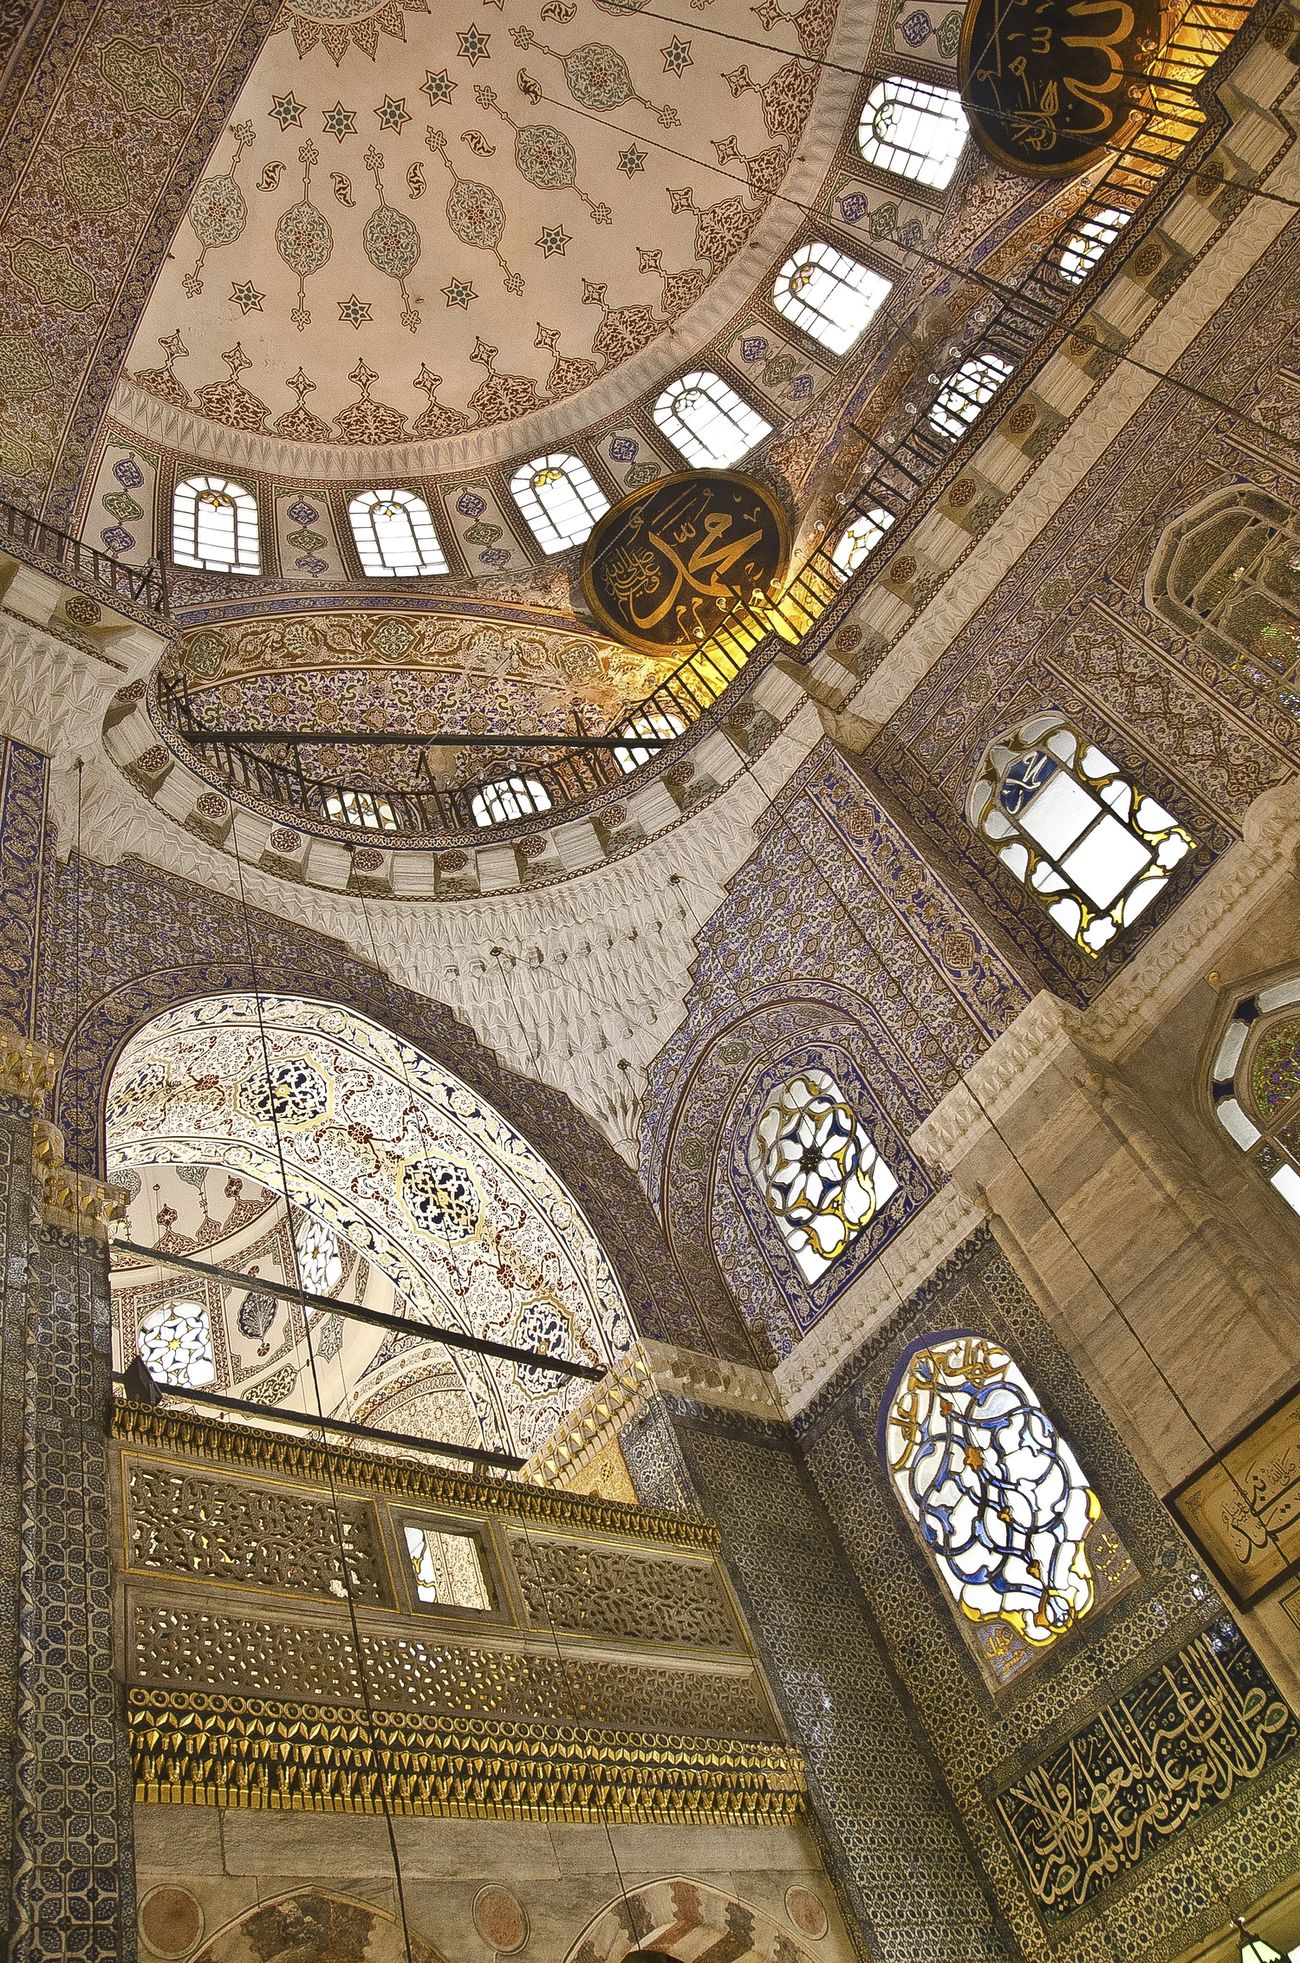 Inside New Mosque in Turkey